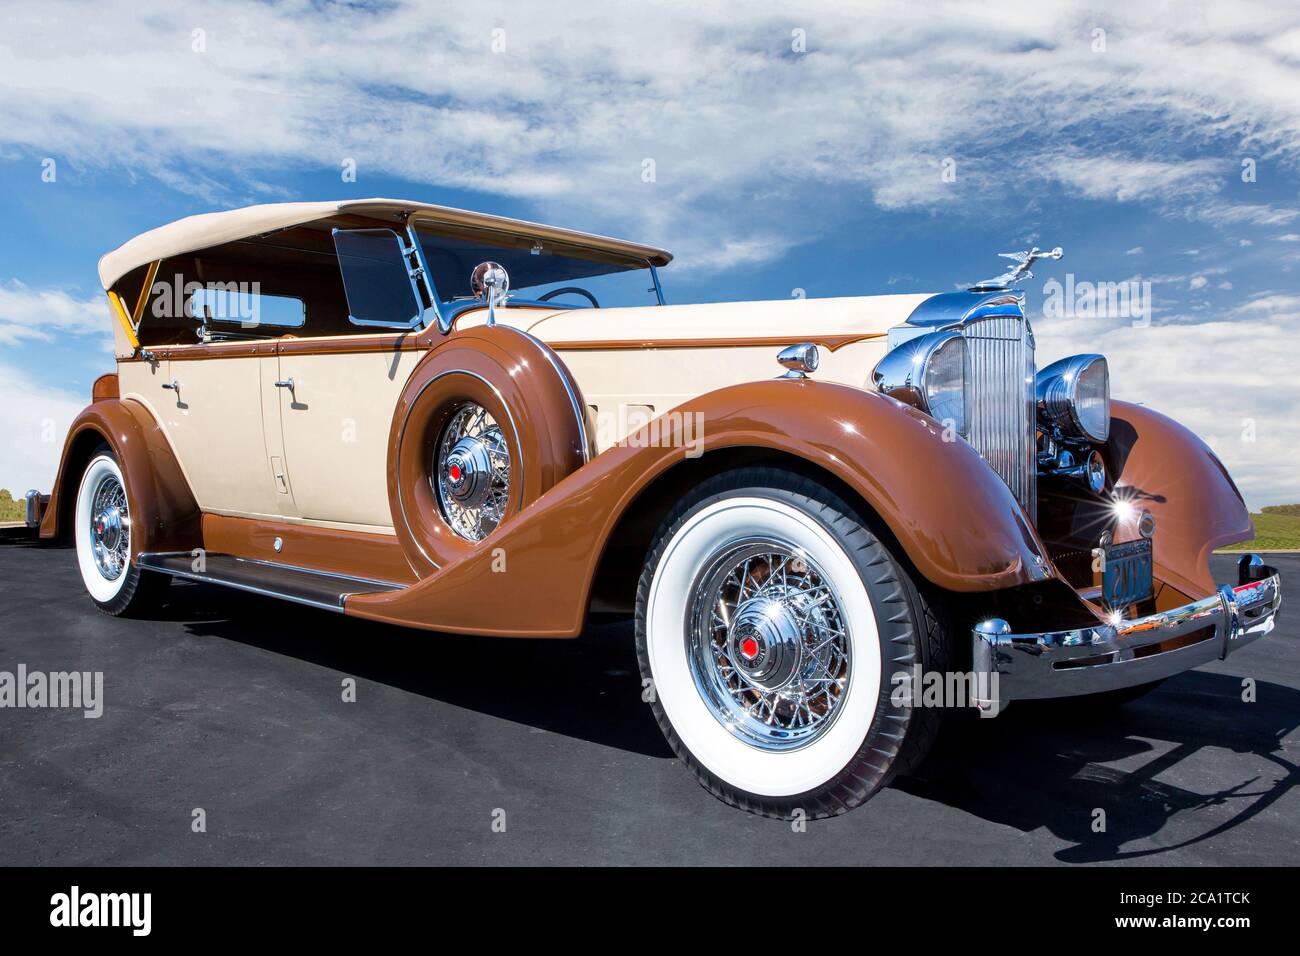 Ein 1934 Packard, ein amerikanischer Klassiker, eingerahmt von einem teilweise bewölkten Himmel. Stockfoto